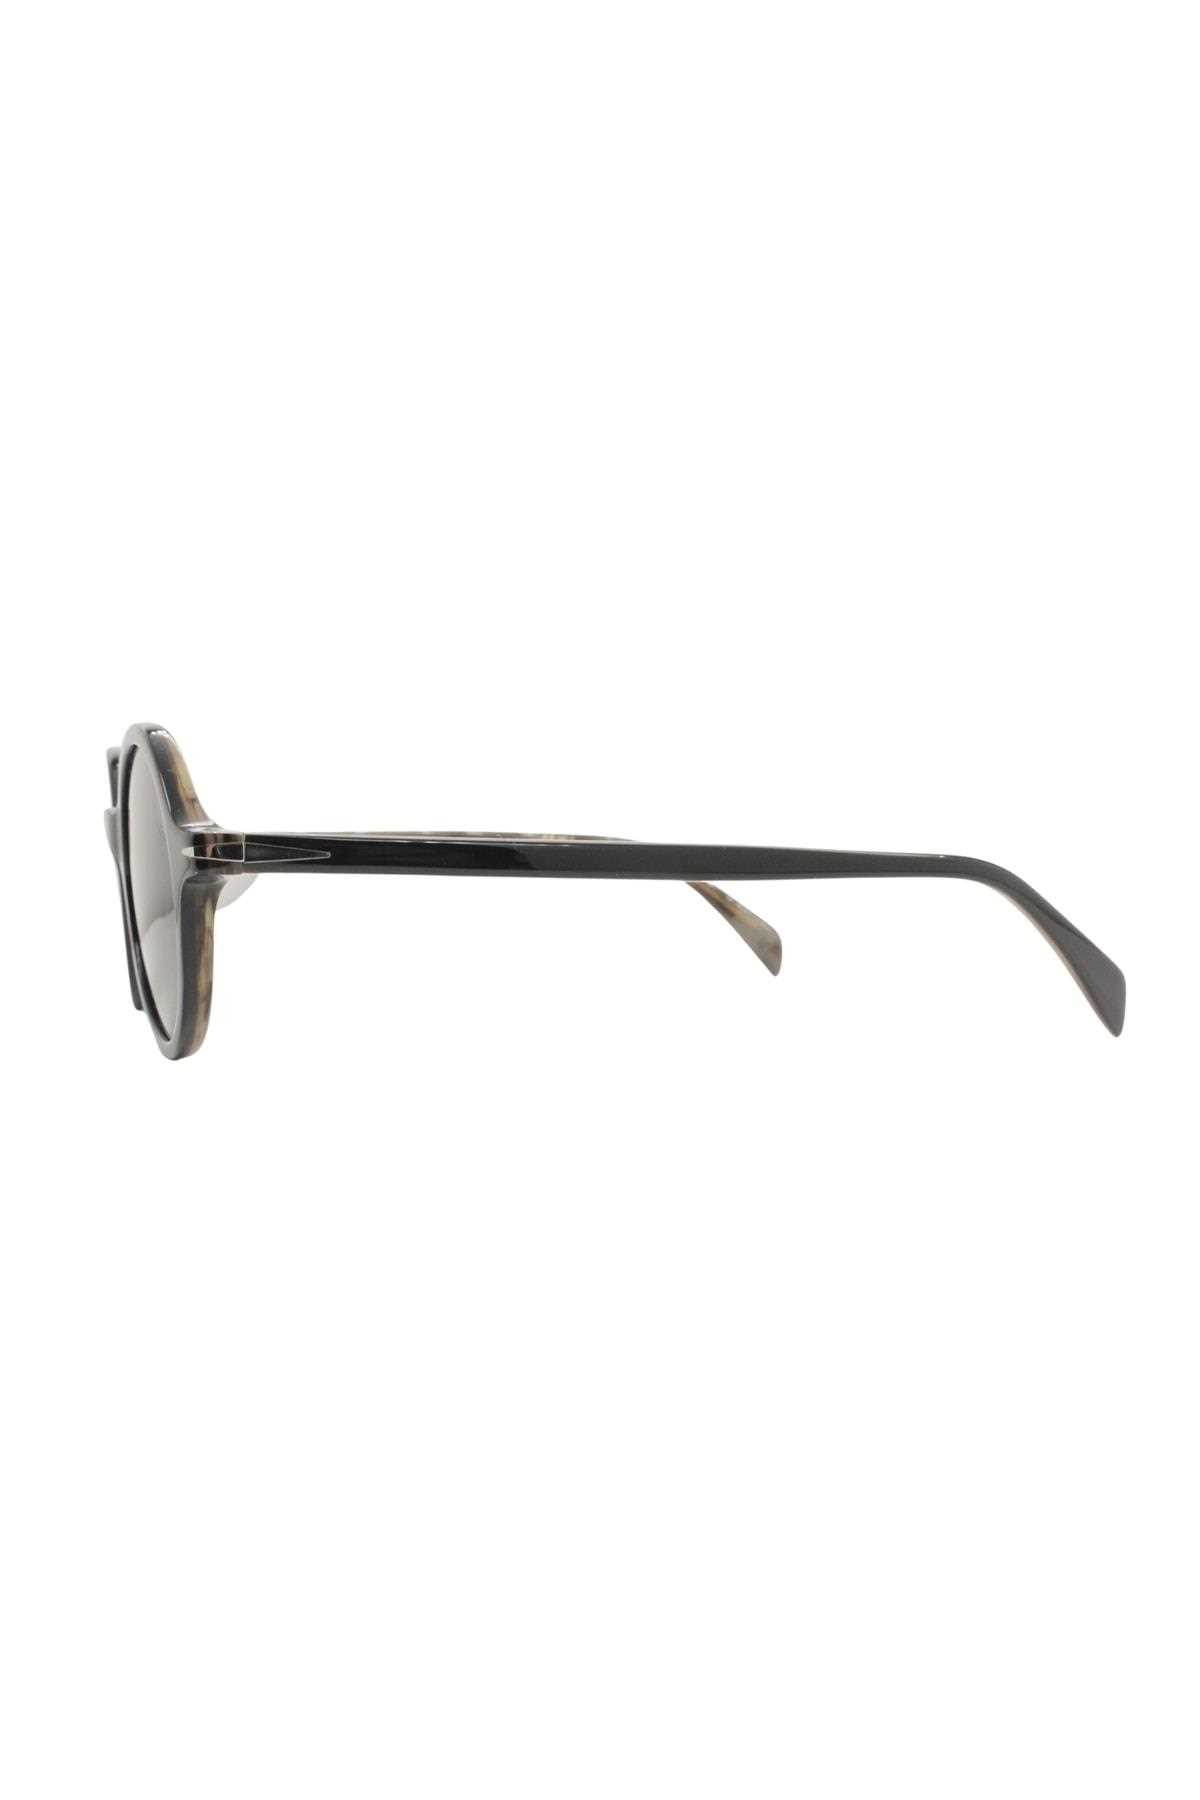 خرید انلاین عینک دودی اسپرت ارزان زیبا David Beckham کد ty346084498